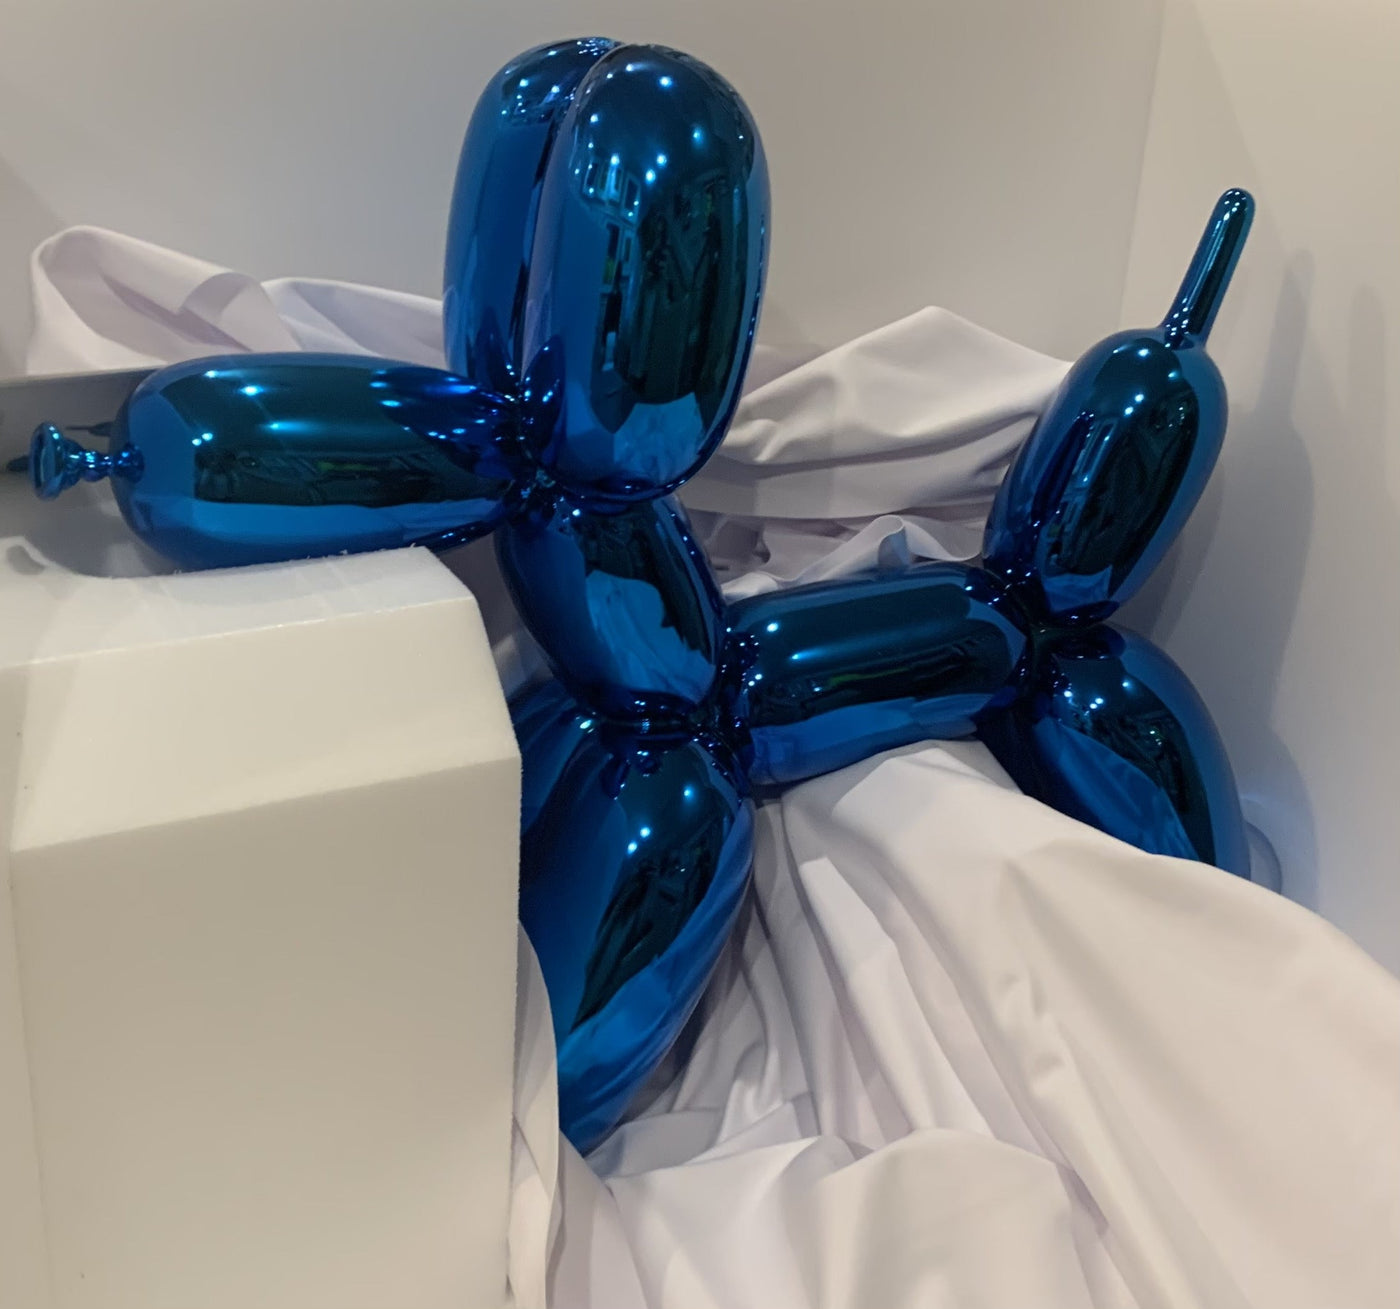 Jeff Koons Balloon Dog (Blue) 2021